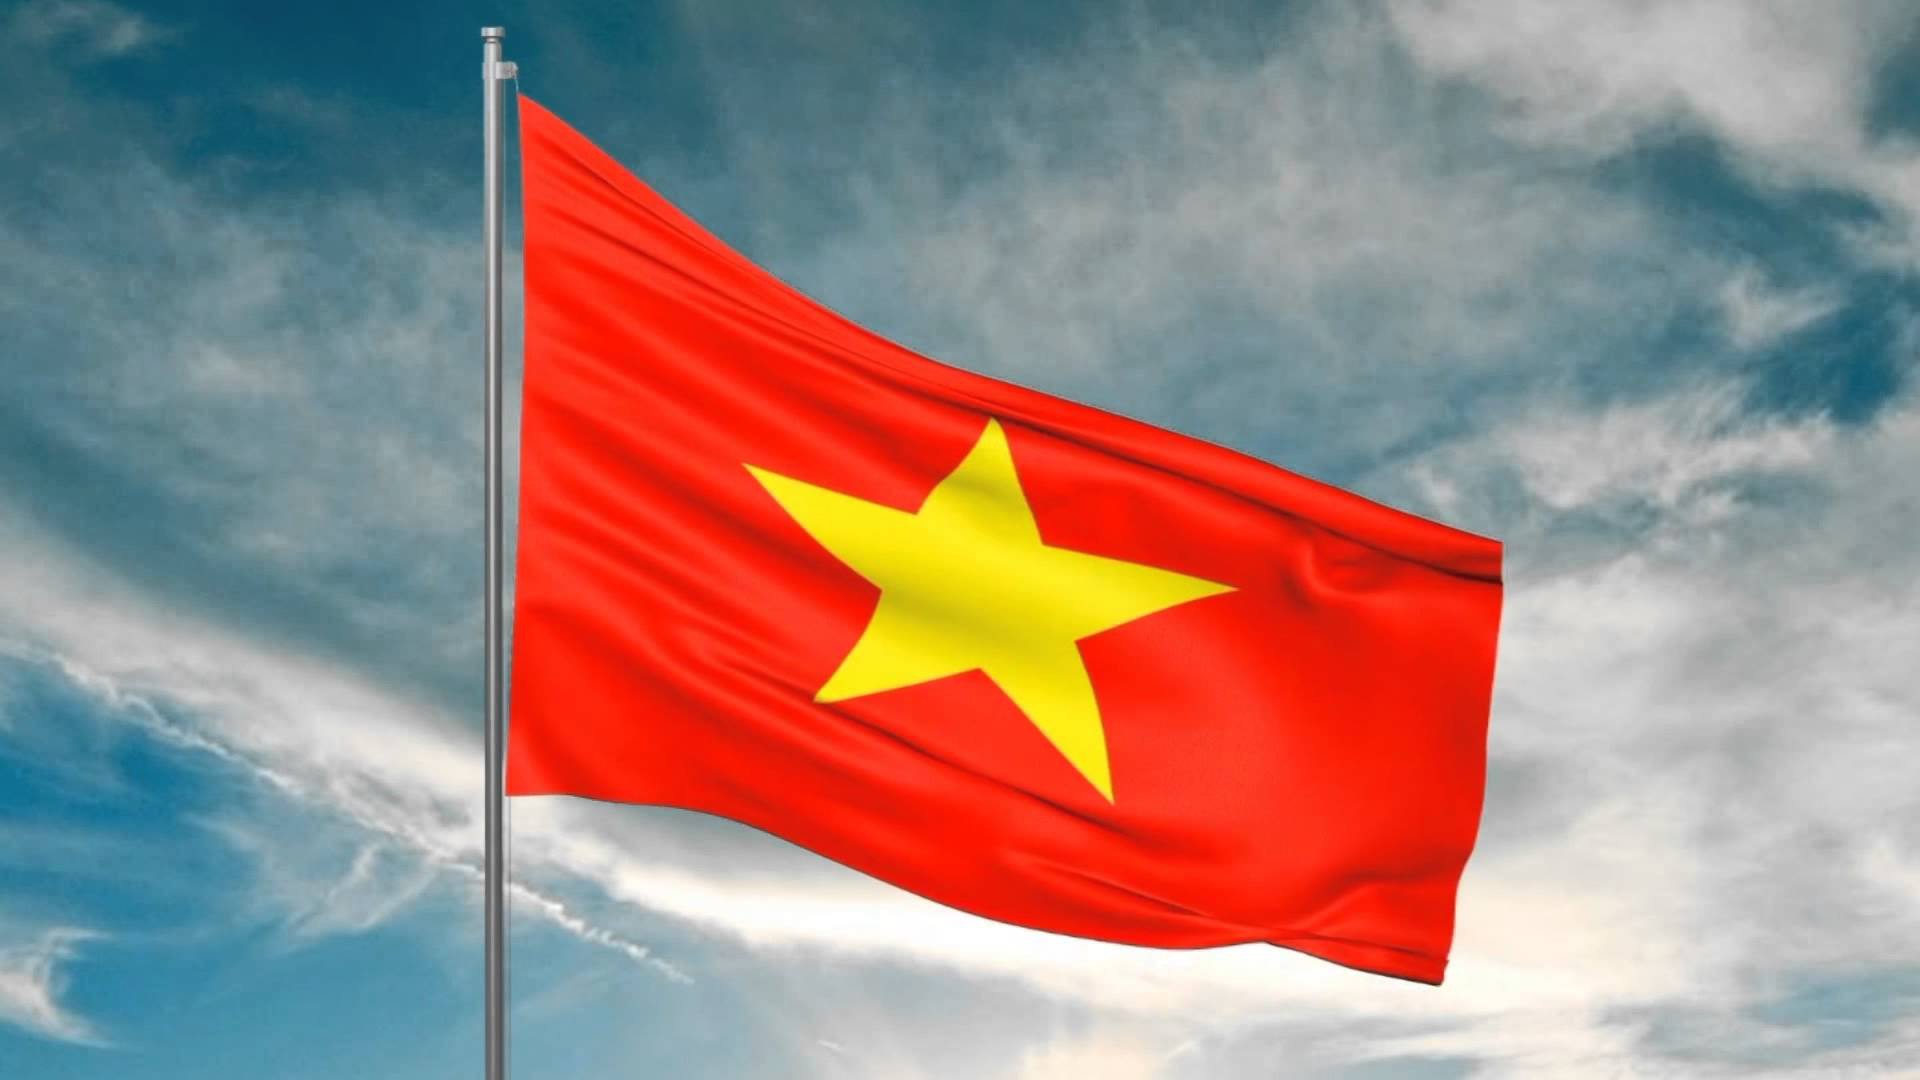 Lá cờ Tổ quốc Việt Nam tự hào bay trên phố phường và đại diện cho tinh thần yêu nước sâu sắc của con dân. Họ tự tin và kiêu hãnh vì quốc gia đang phát triển nhanh chóng. Hãy xem hình ảnh các em học sinh cùng cất giữ lá cờ Tổ quốc trong ngày Quốc khánh.